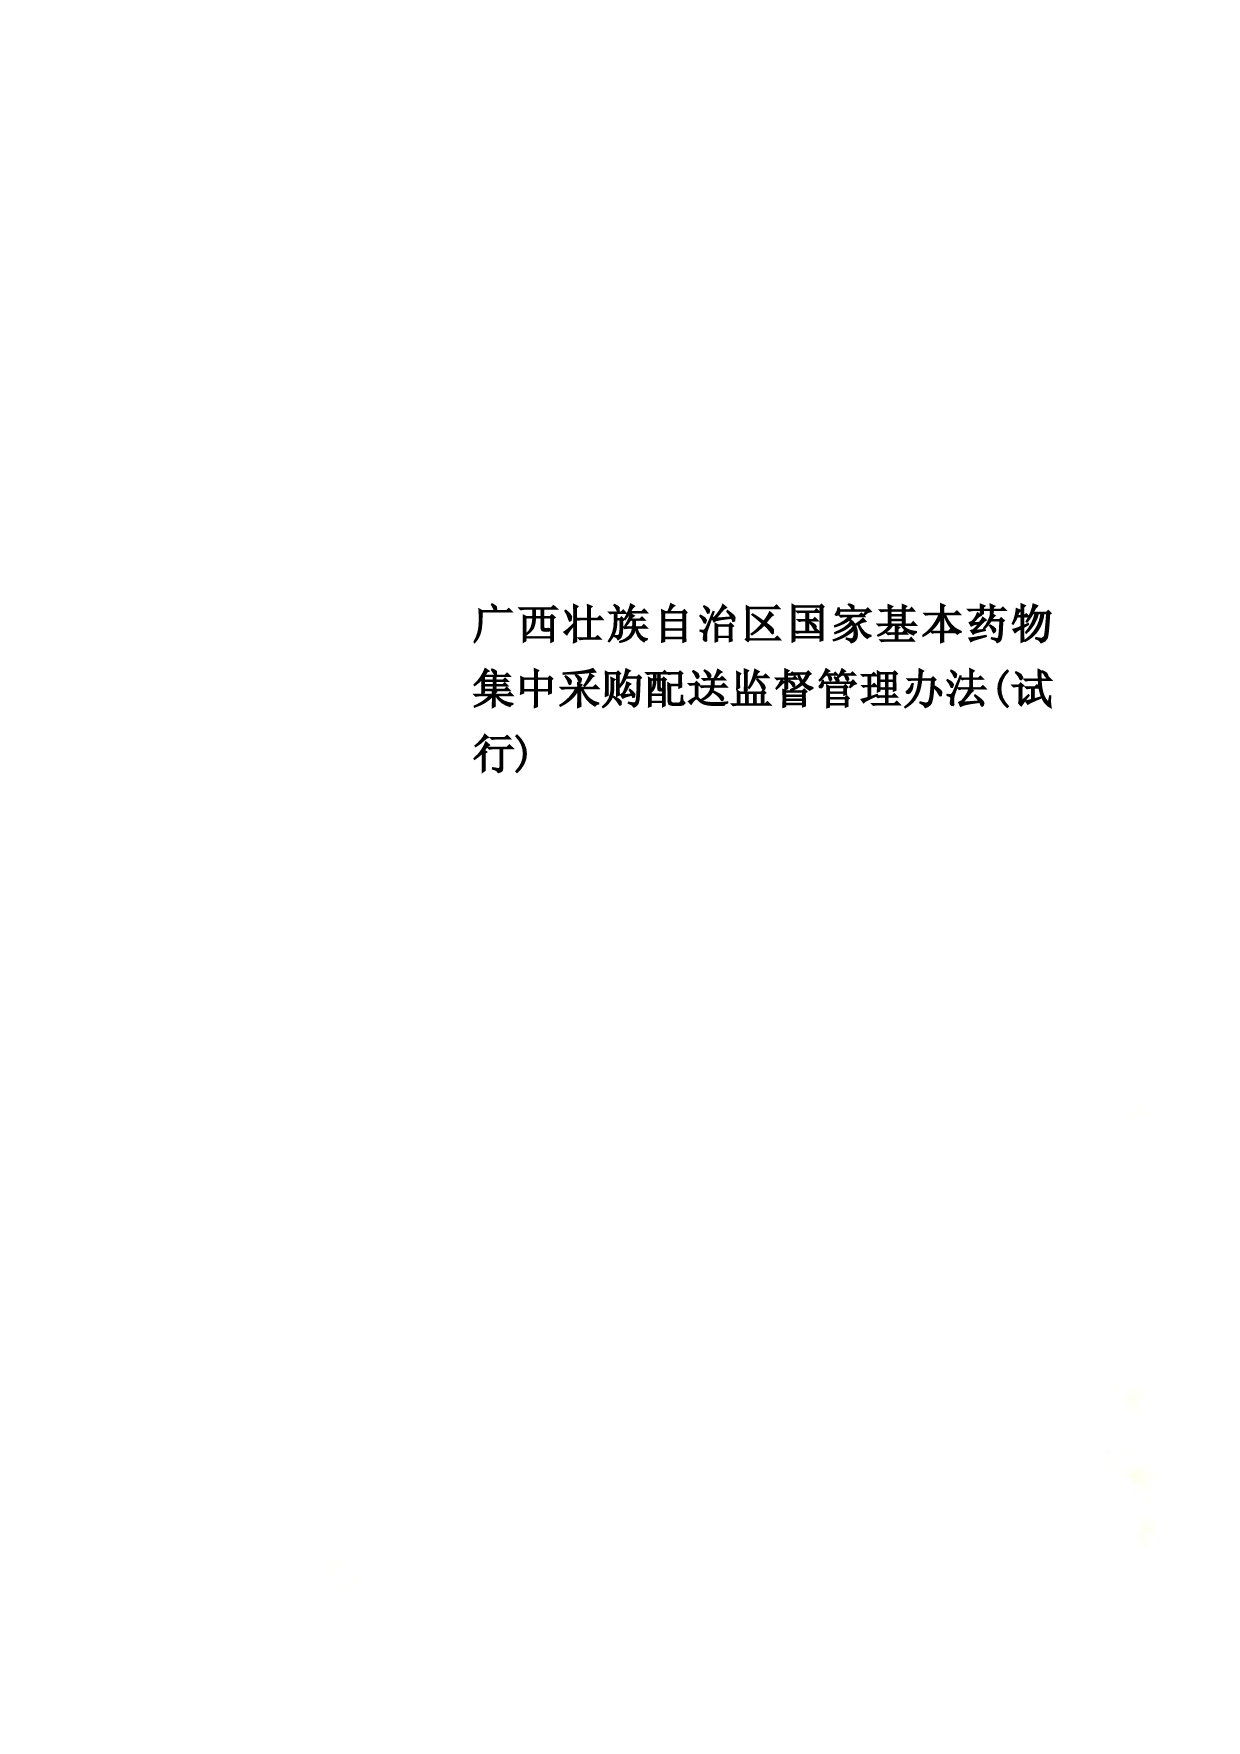 广西壮族自治区国家基本药物集中采购配送监督管理办法(试行)